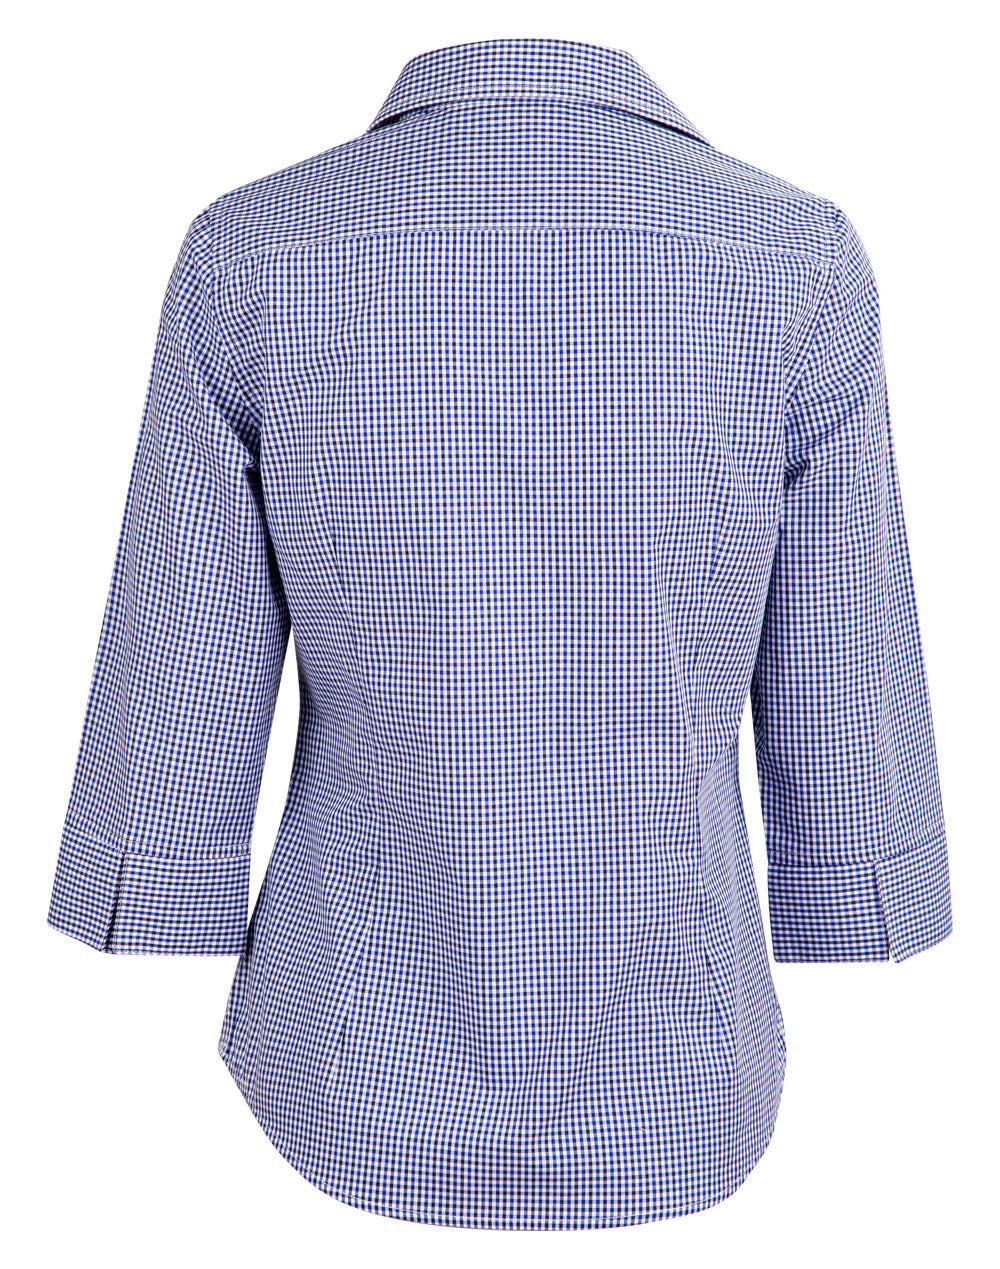 M8320Q Ladies’ Multi-Tone Check 3/4 Sleeve Shirt